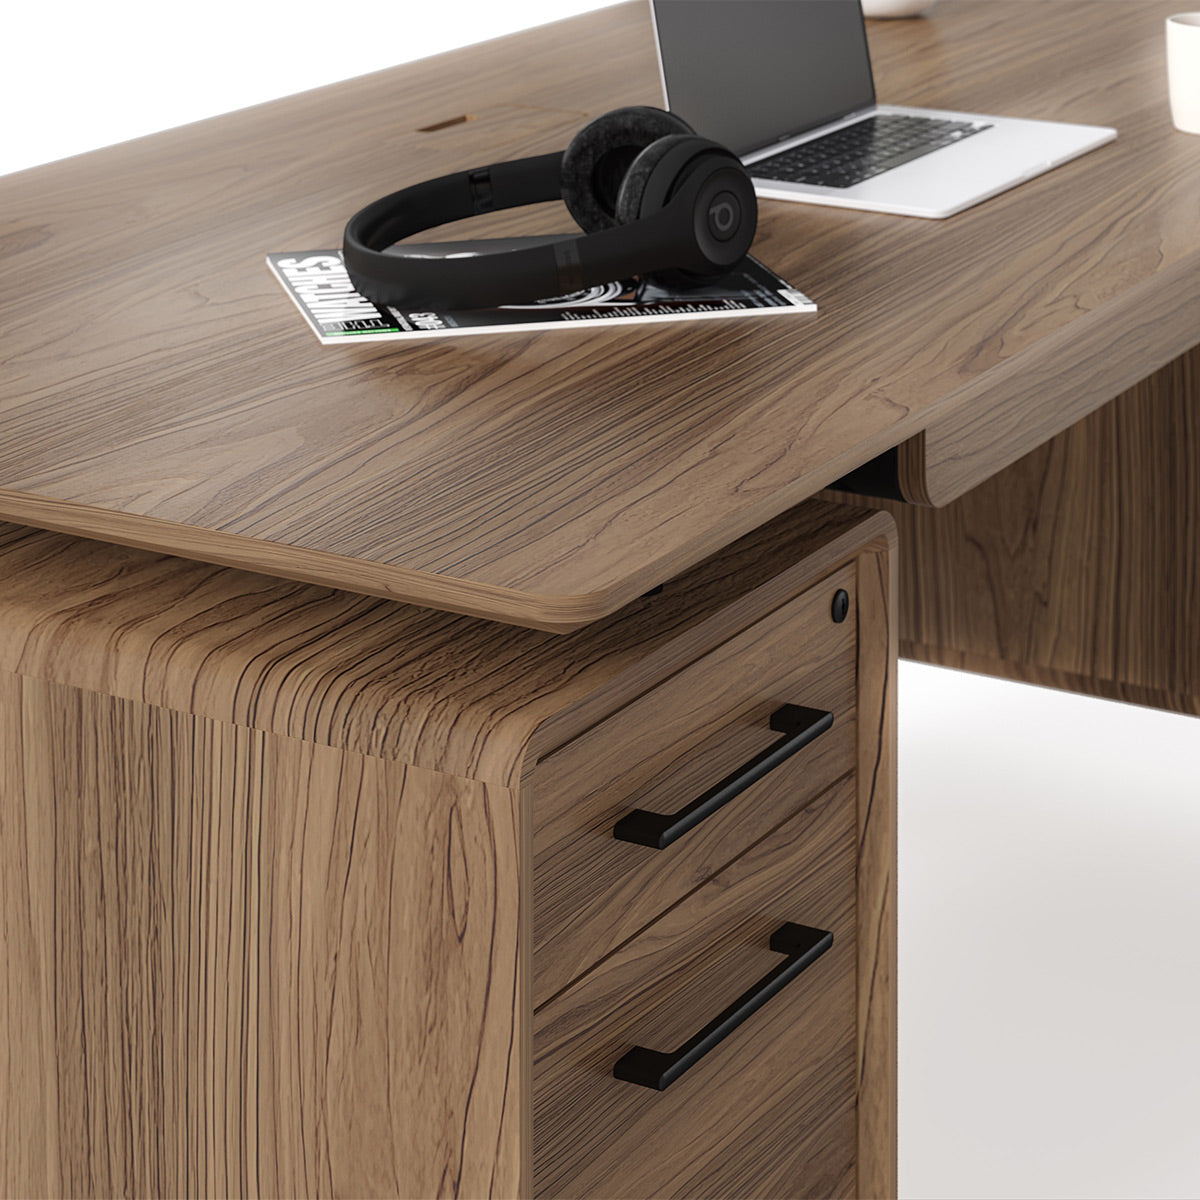 BDI LINQ 6821 Executive Desk (Natural Walnut)